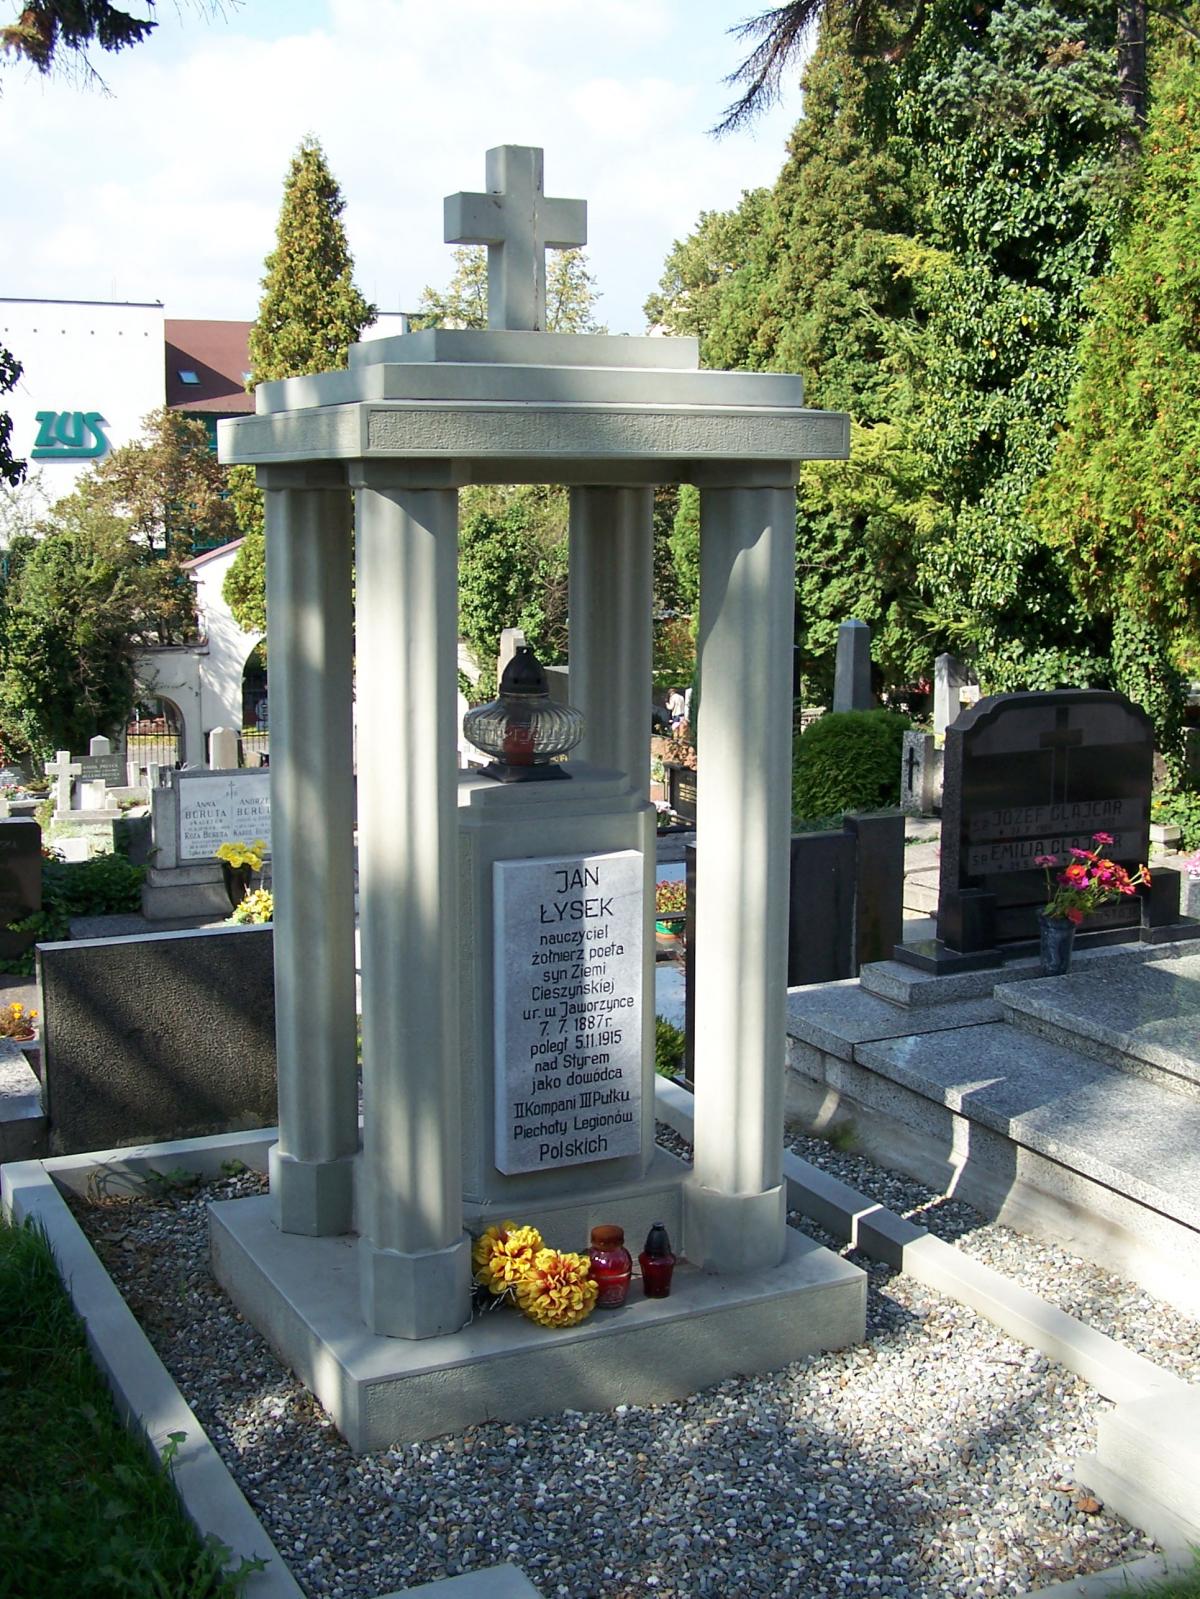 Wikipedia, 2009 in Cieszyn, Graves in Cieszyn, Jan Łysek, Lutheran Cemetery in Cieszyn, Self-publish